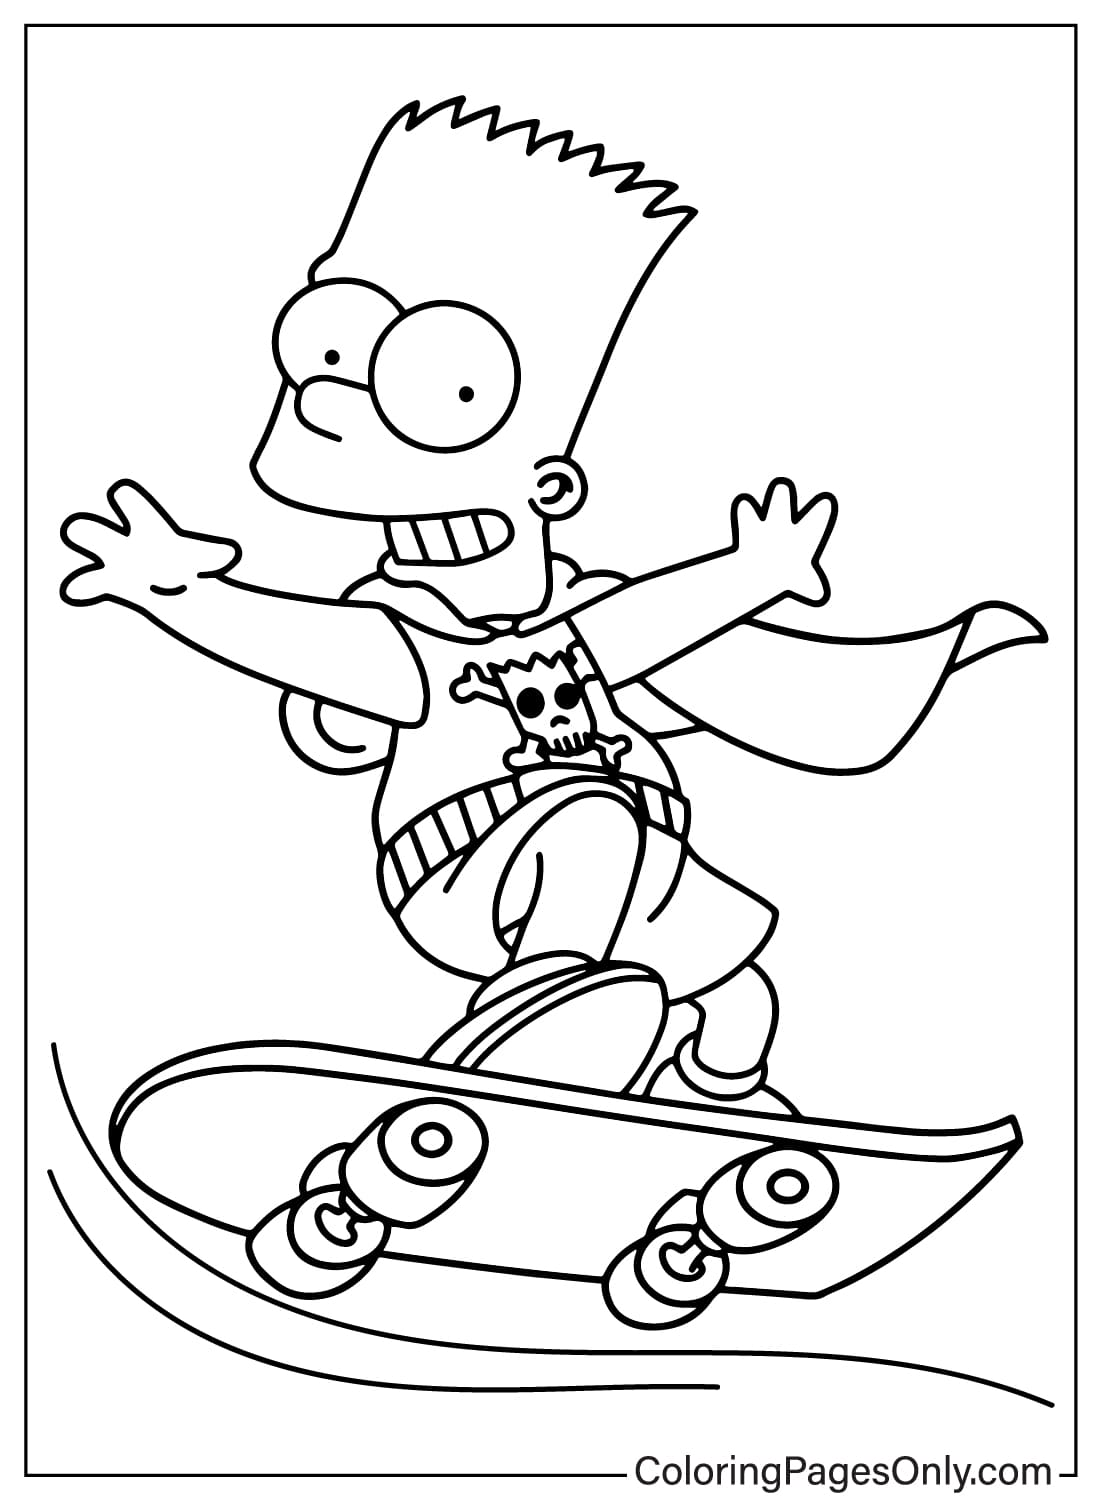 Bart Simpson kleurplaat van Simpsons